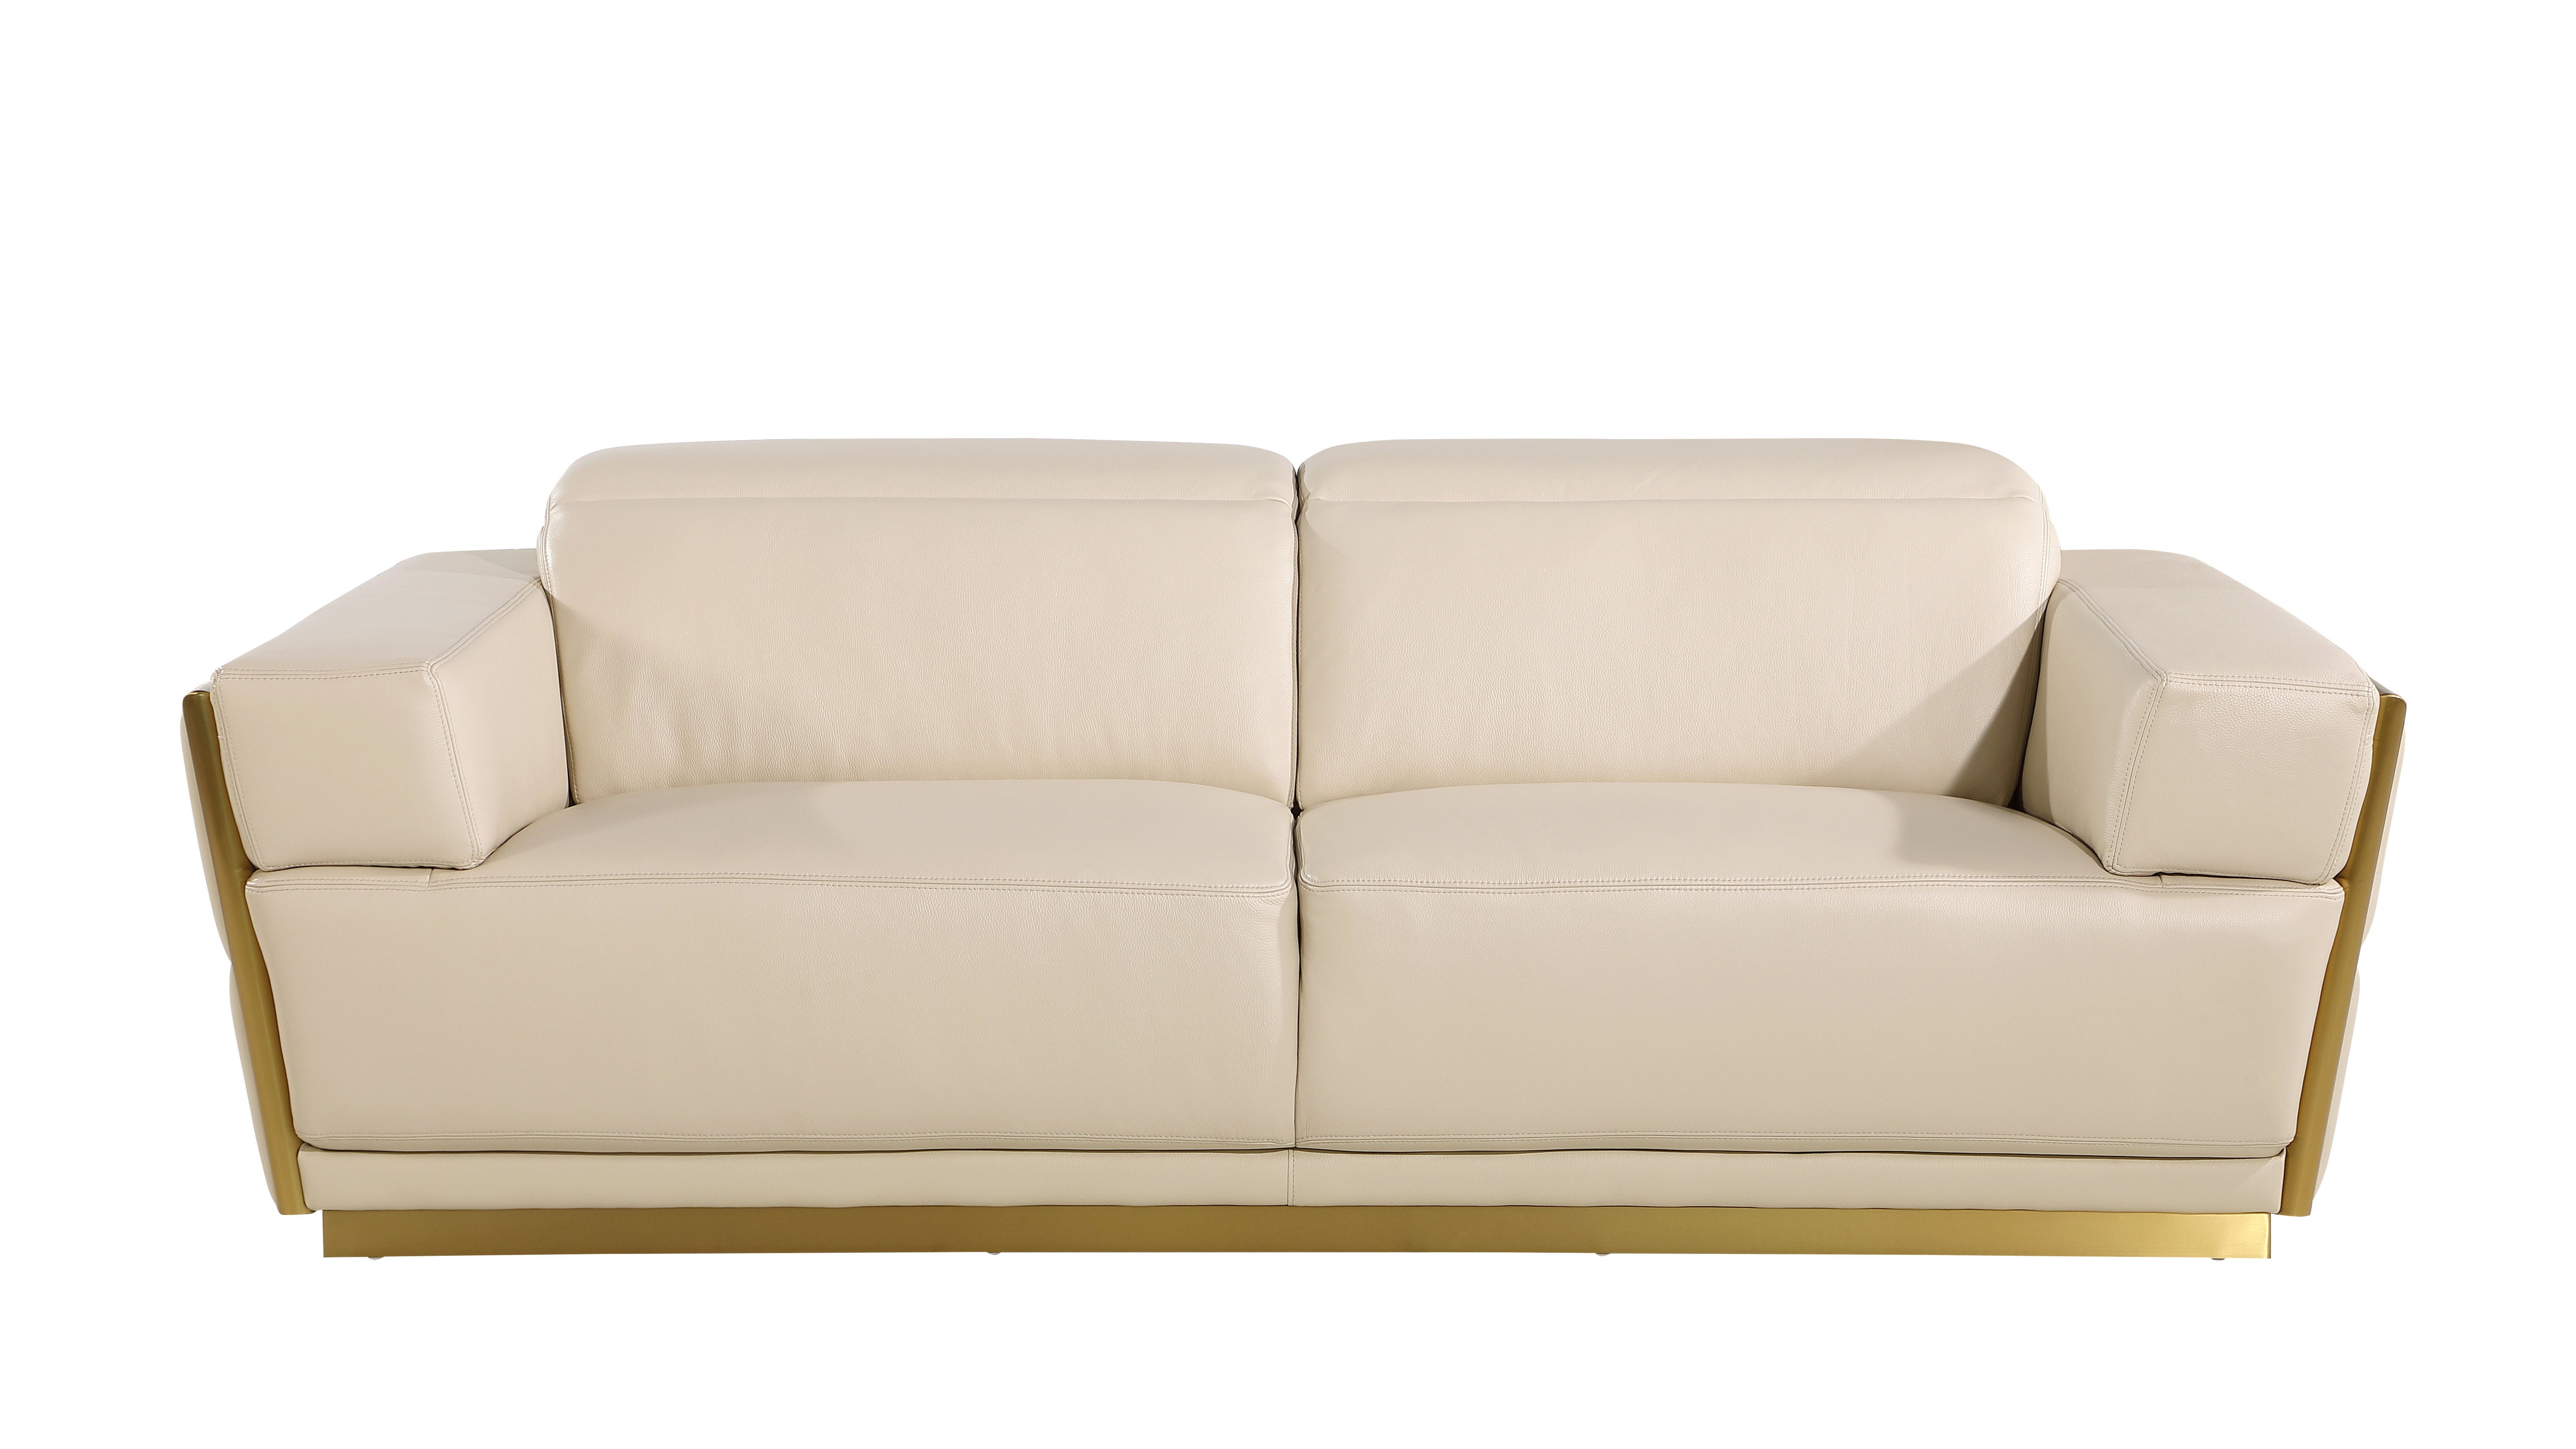 1111 - Leather Sofa